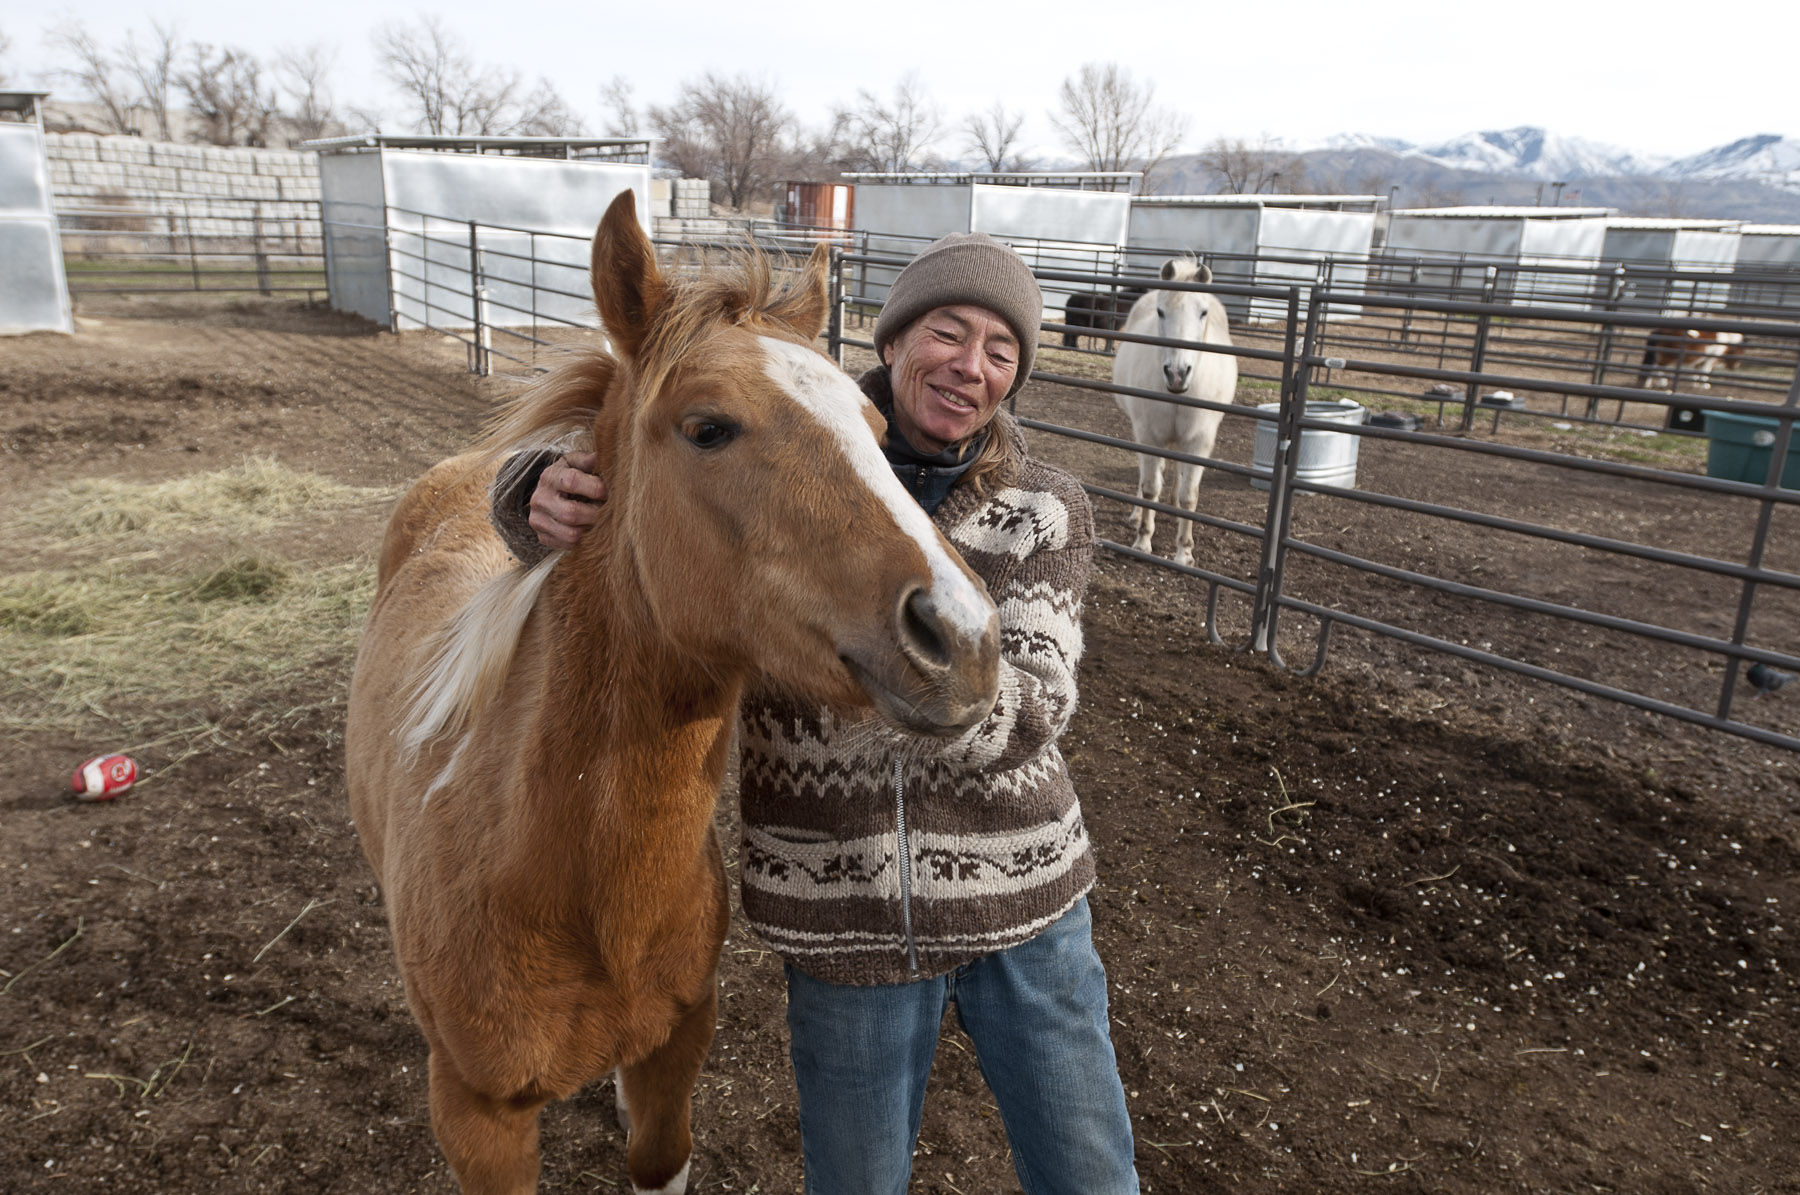 Rescued Horses In Utah Need Your Help